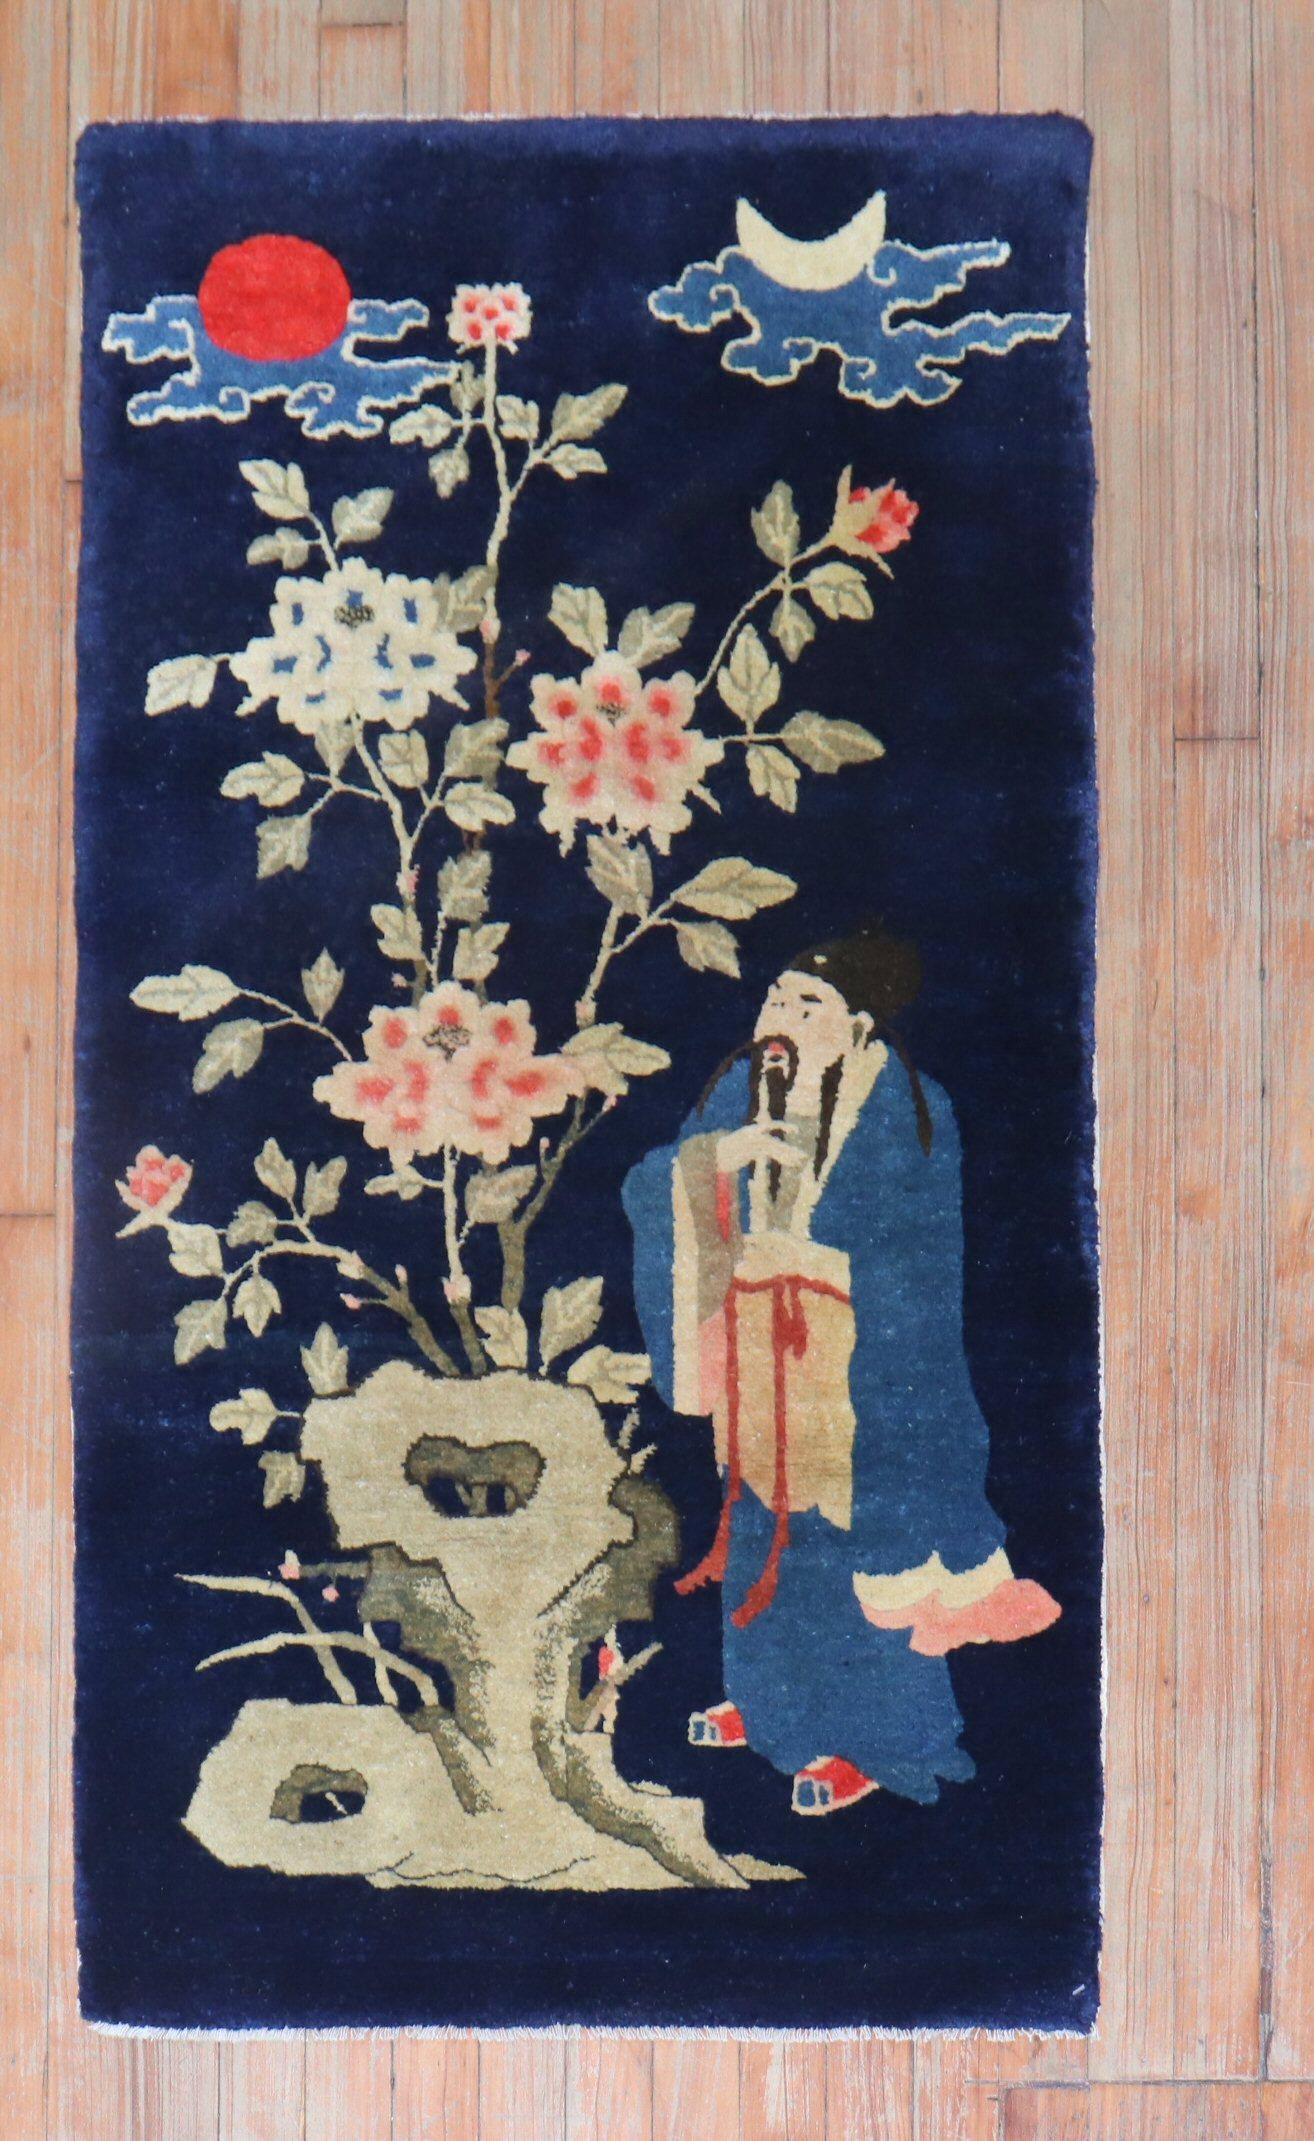 Ein chinesischer Buddha-Teppich aus dem frühen 20. Jahrhundert.

Maße: 2'3'' x 4'3''.